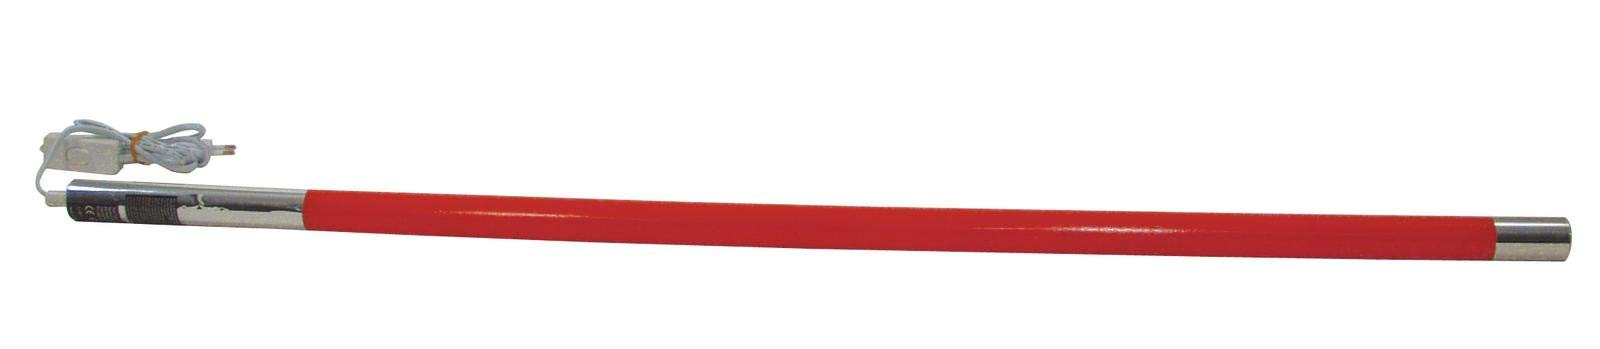 Eurolite Leuchtstab T5 20W 105cm rot | Farbige Leuchtstoffröhre